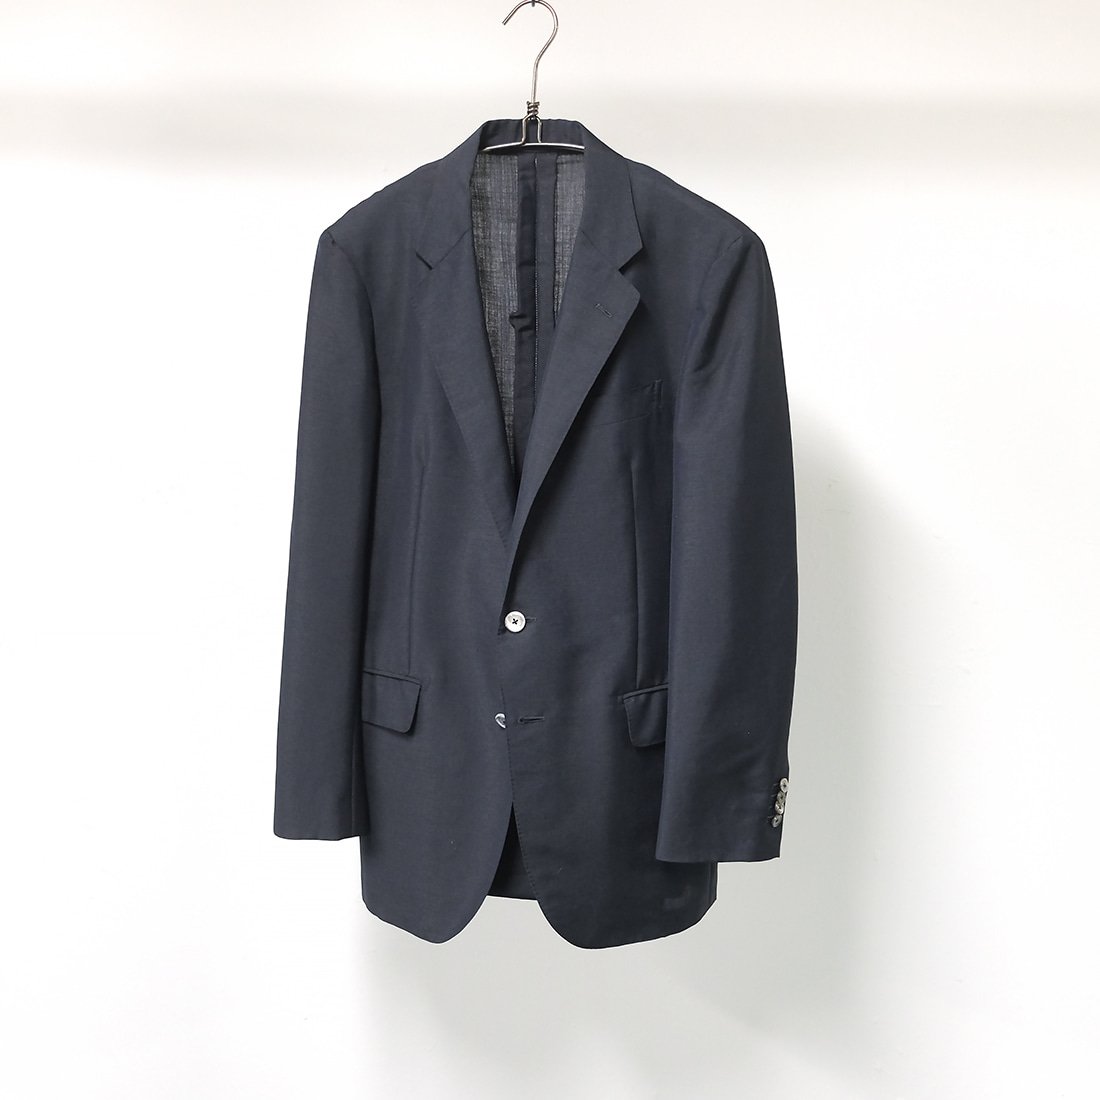 유나이티드 애로우즈 / Made in japan  United arrows district black blazer